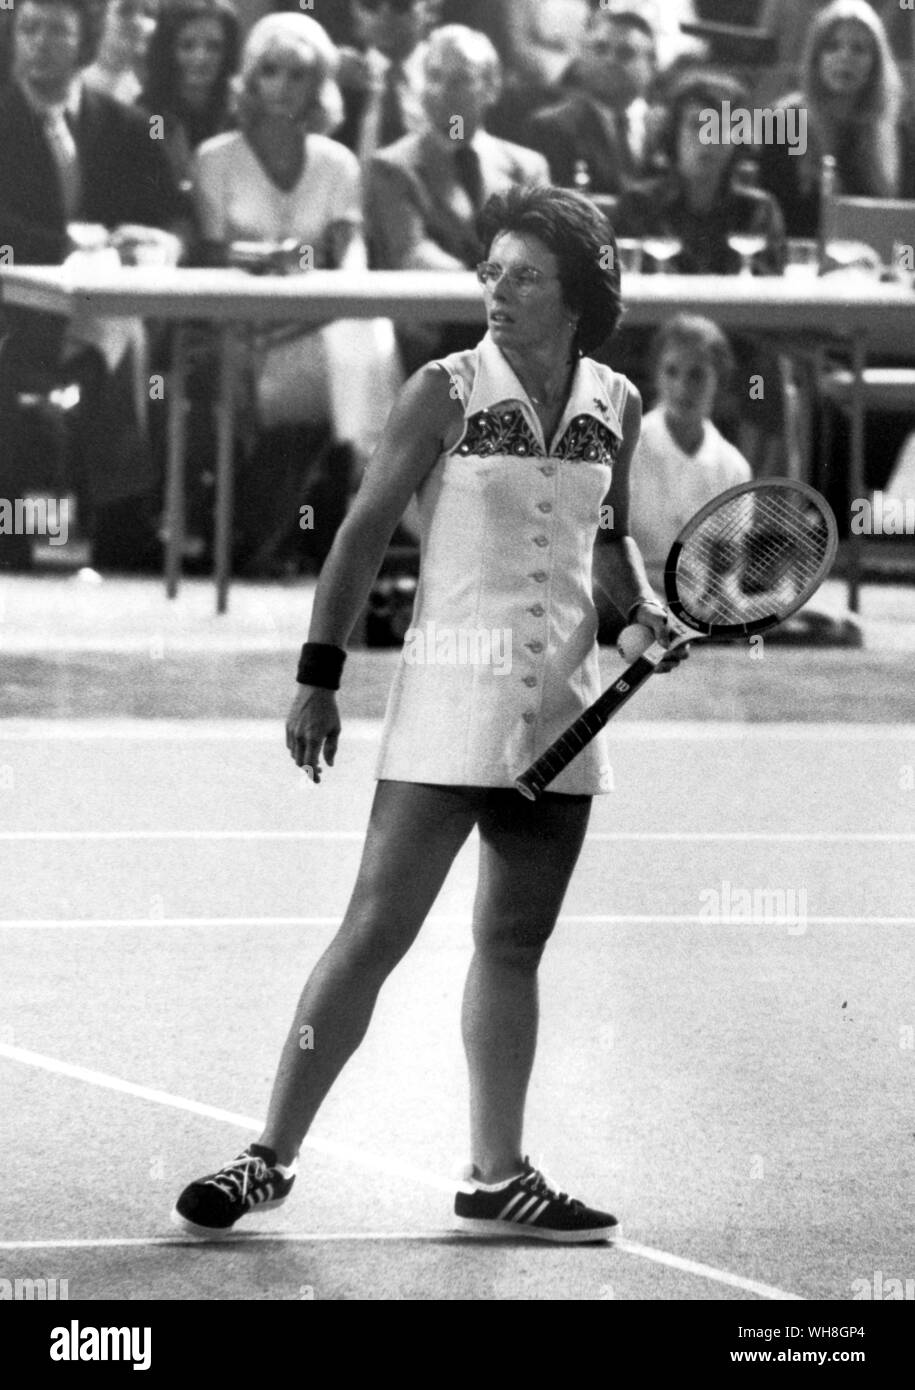 Billie Jean King's Kleid 1973 wurde in Mint Green polyester gestrickt, mit Sky Blue Collar und horizontale Streifen in Royal Blau, mit Strass und Pailletten. Während ihrer Karriere gewann sie 12 Grand Slam Titel singles, 14 Grand Slam Titel für Frauen verdoppelt, und 11 Grand Slam Titel gemischtes Doppel. Sie ist in der Regel als einer der größten Tennisspieler und weibliche Athleten in der Geschichte zu sein. Die Enzyklopädie von Tennis Seite 241. Stockfoto